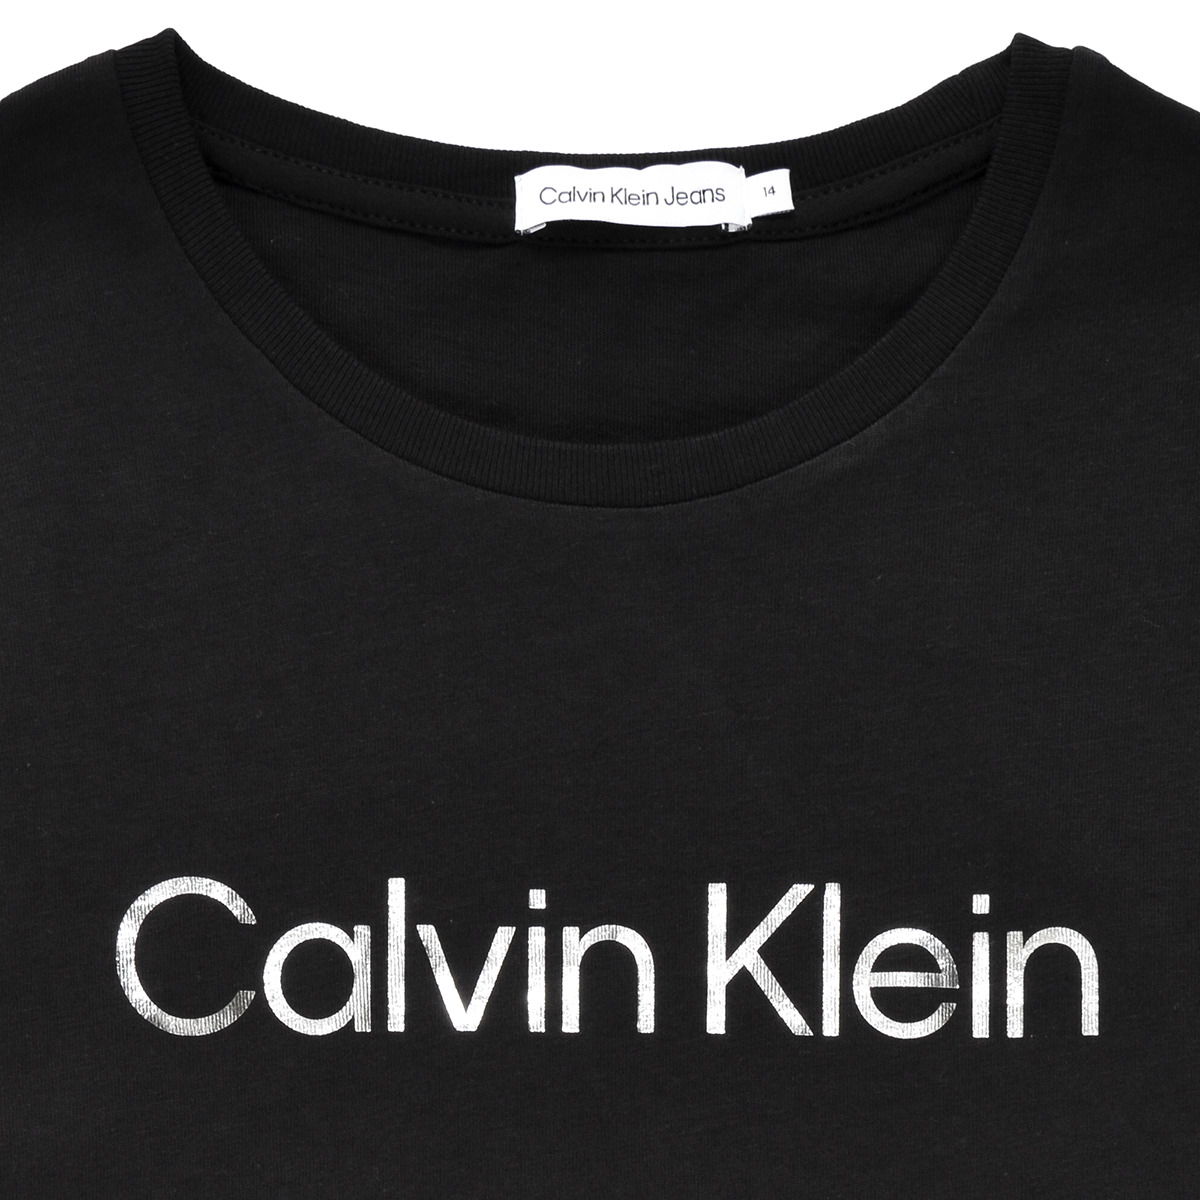 Calvin Klein Jeans Noir INSTITUTIONAL SILVER LOGO T-SHIRT DRESS 0dshyY2f